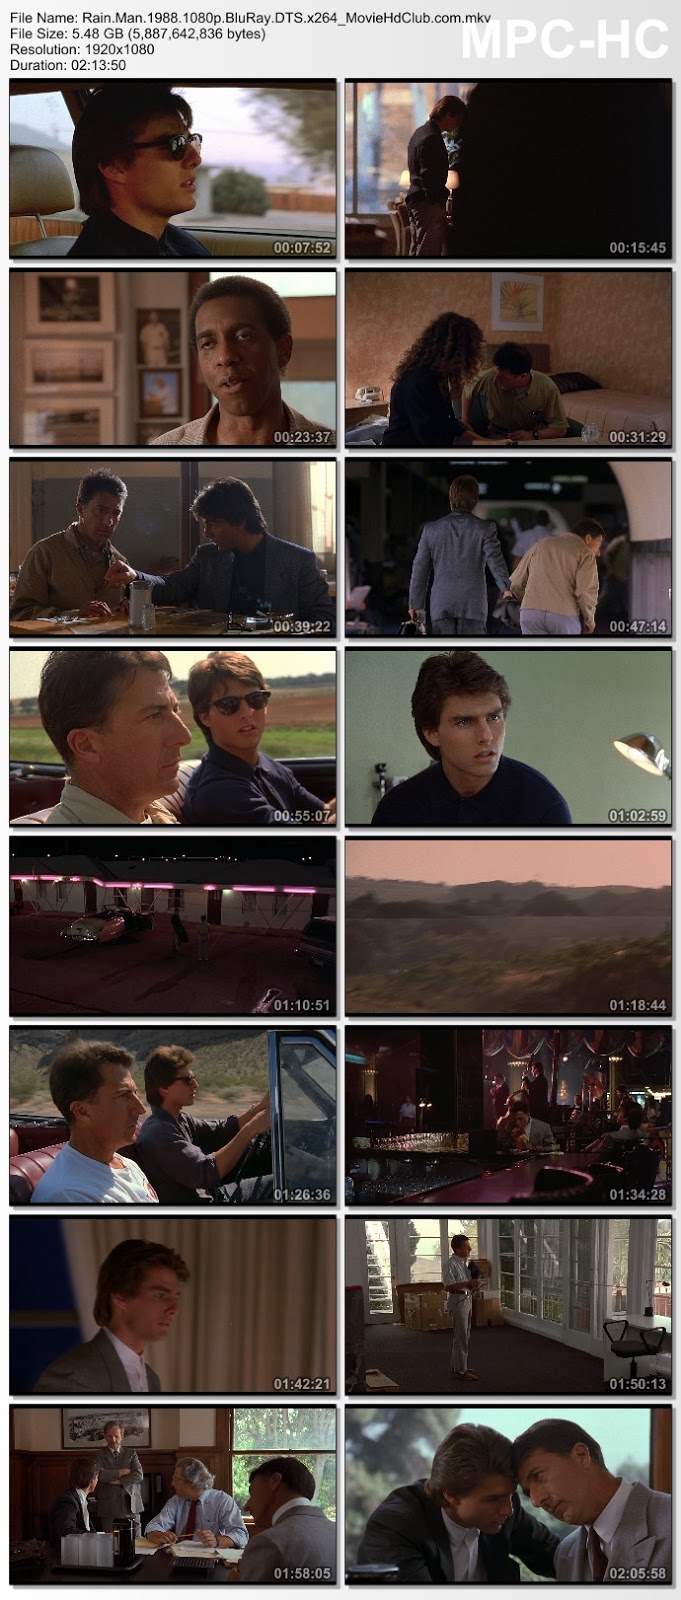 [Mini-HD] Rain Man (1988) - ชายชื่อเรนแมน [1080p][เสียง:ไทย 2.0/Eng DTS][ซับ:ไทย/Eng][.MKV][5.48GB] RM_MovieHdClub_SS